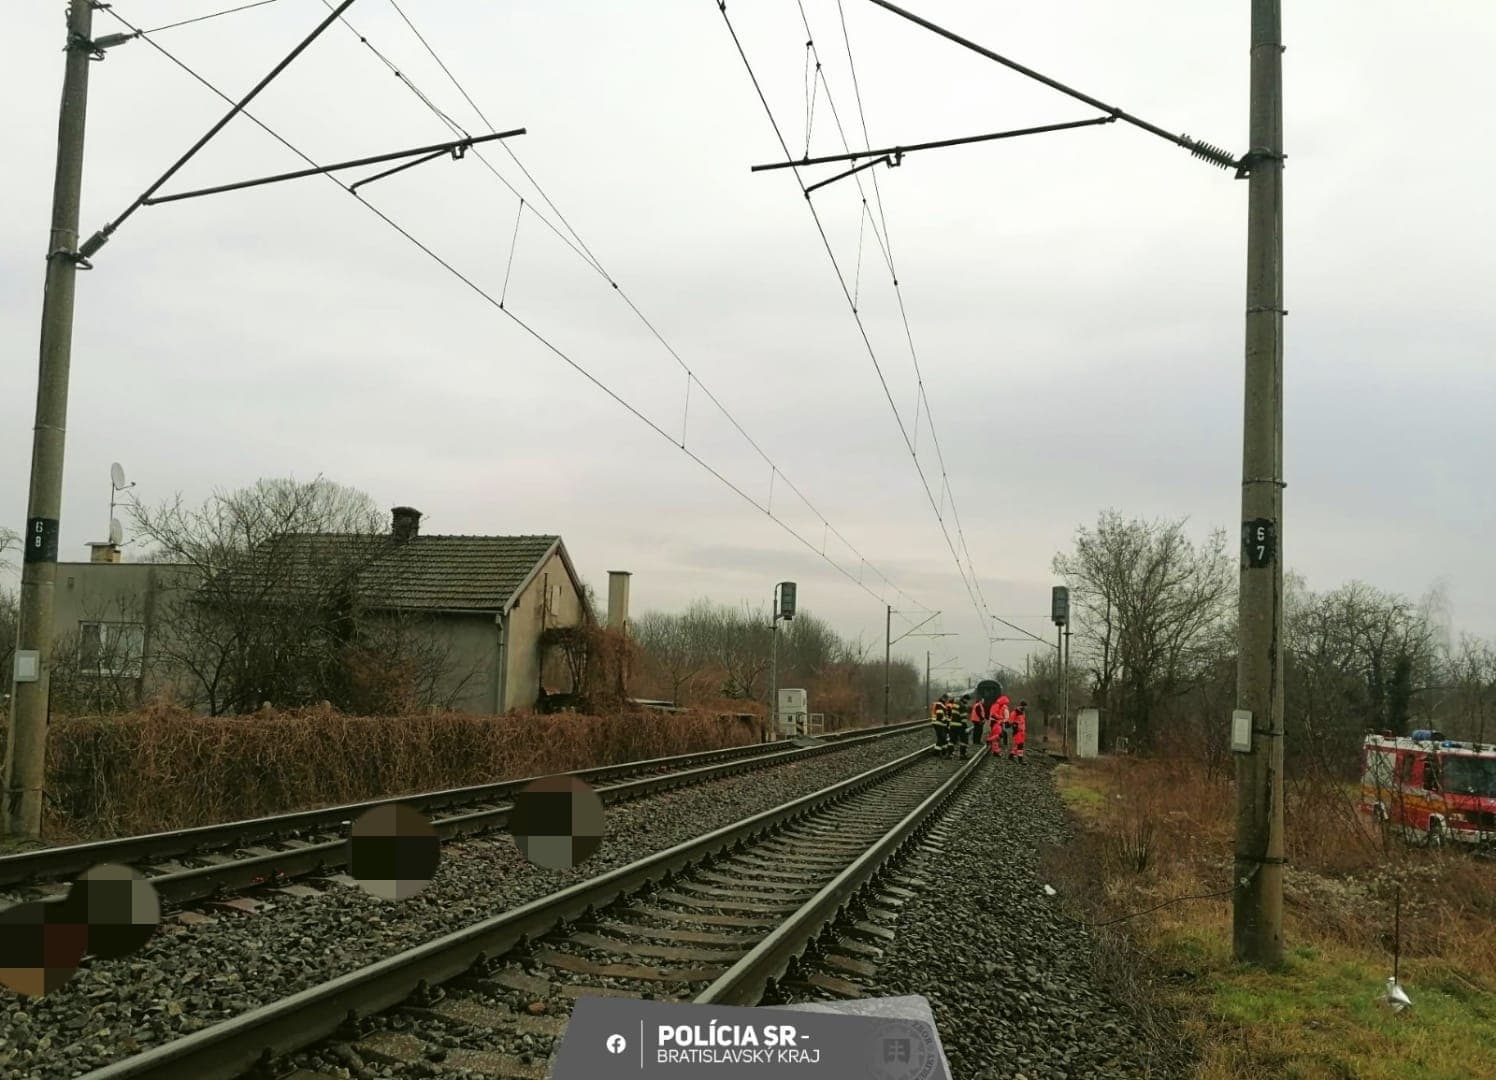 Tragikus baleset: a sínekre lépett a botos férfi, a mozdonyvezető már nem tudott időben lefékezni